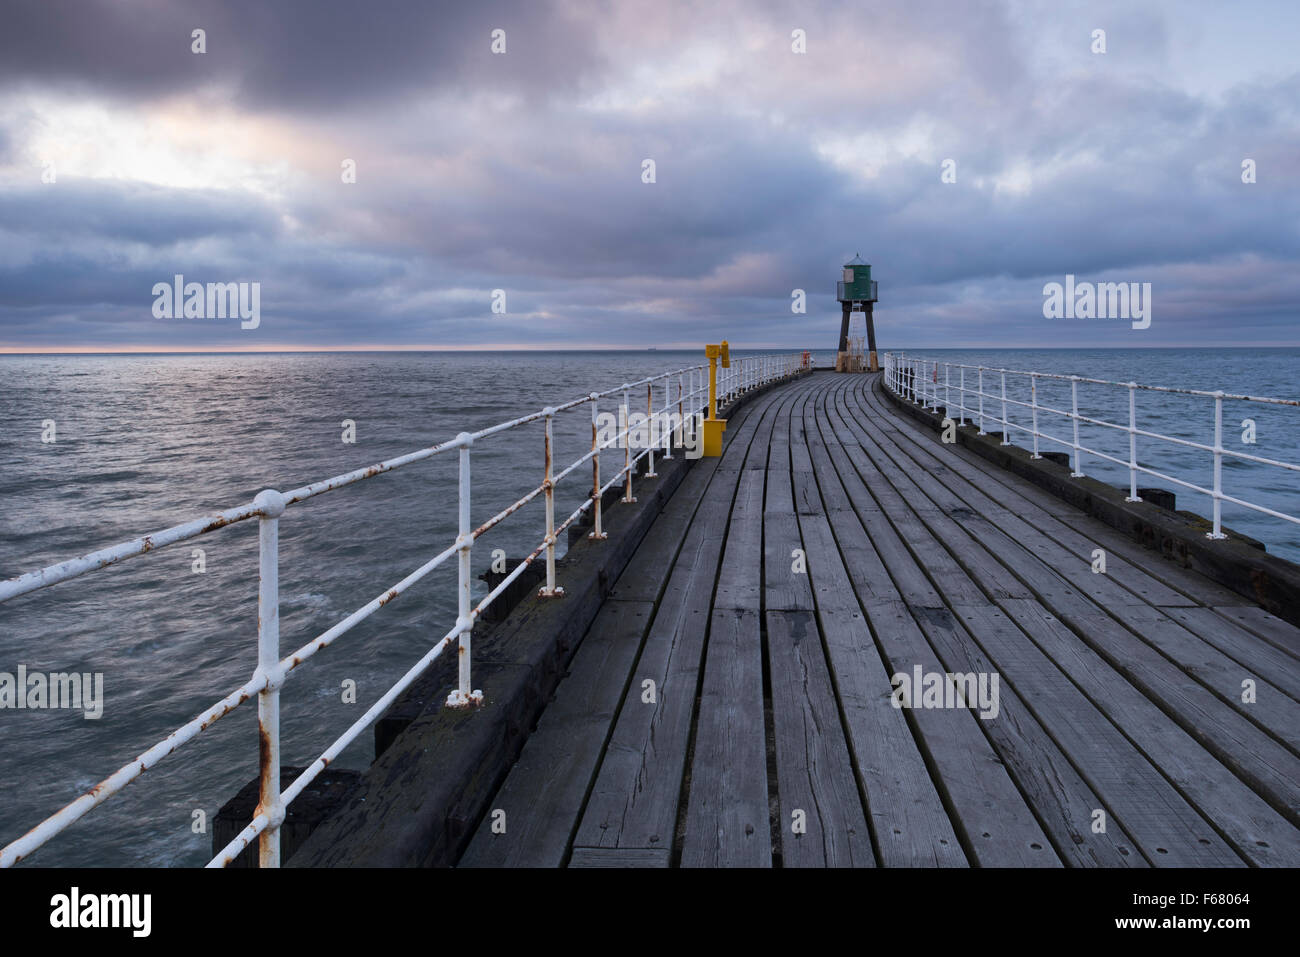 Vista lungo Whitby West Pier al crepuscolo - blu-toni di grigio delle tavole di legno, il mare e il cielo, creare una calma, atmosferici, tranquilla scena. Yorkshire, GB, UK. Foto Stock